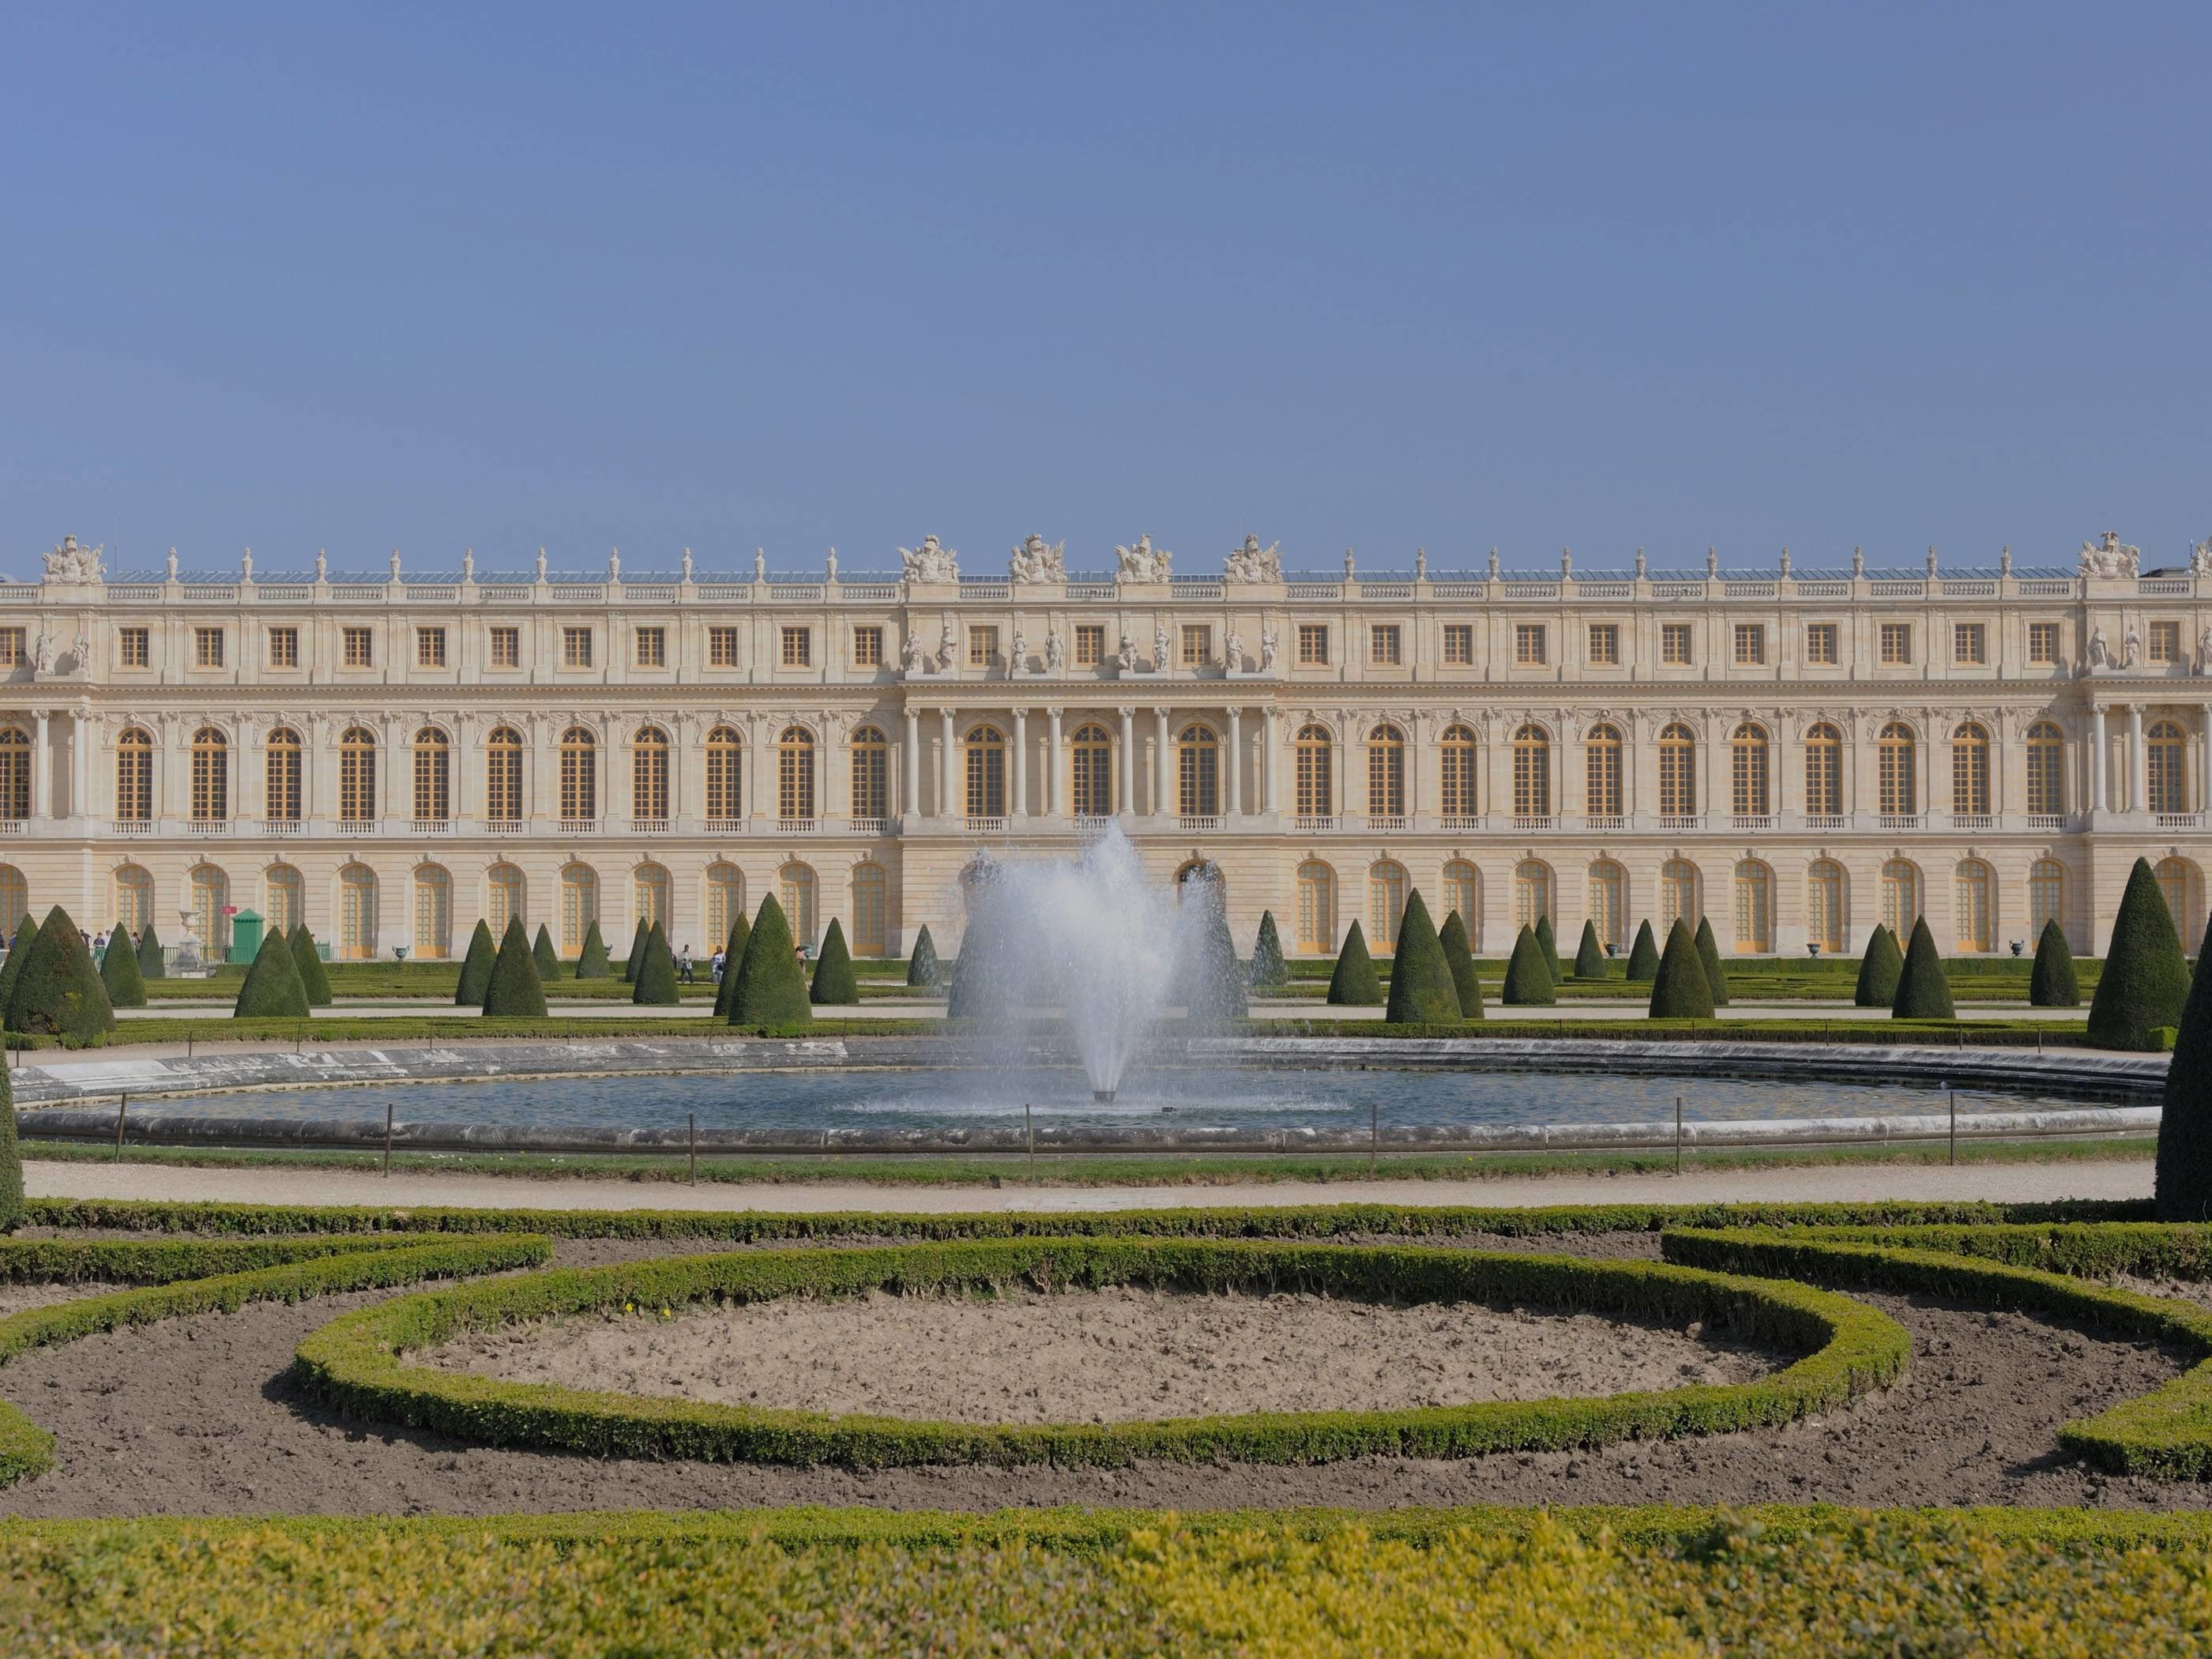 Про версаль. Версальский дворец. Версаль. Версальский дворцово-парковый комплекс, Франция. Королевский дворец в Версале. Дворец и парк в Версале Франция.